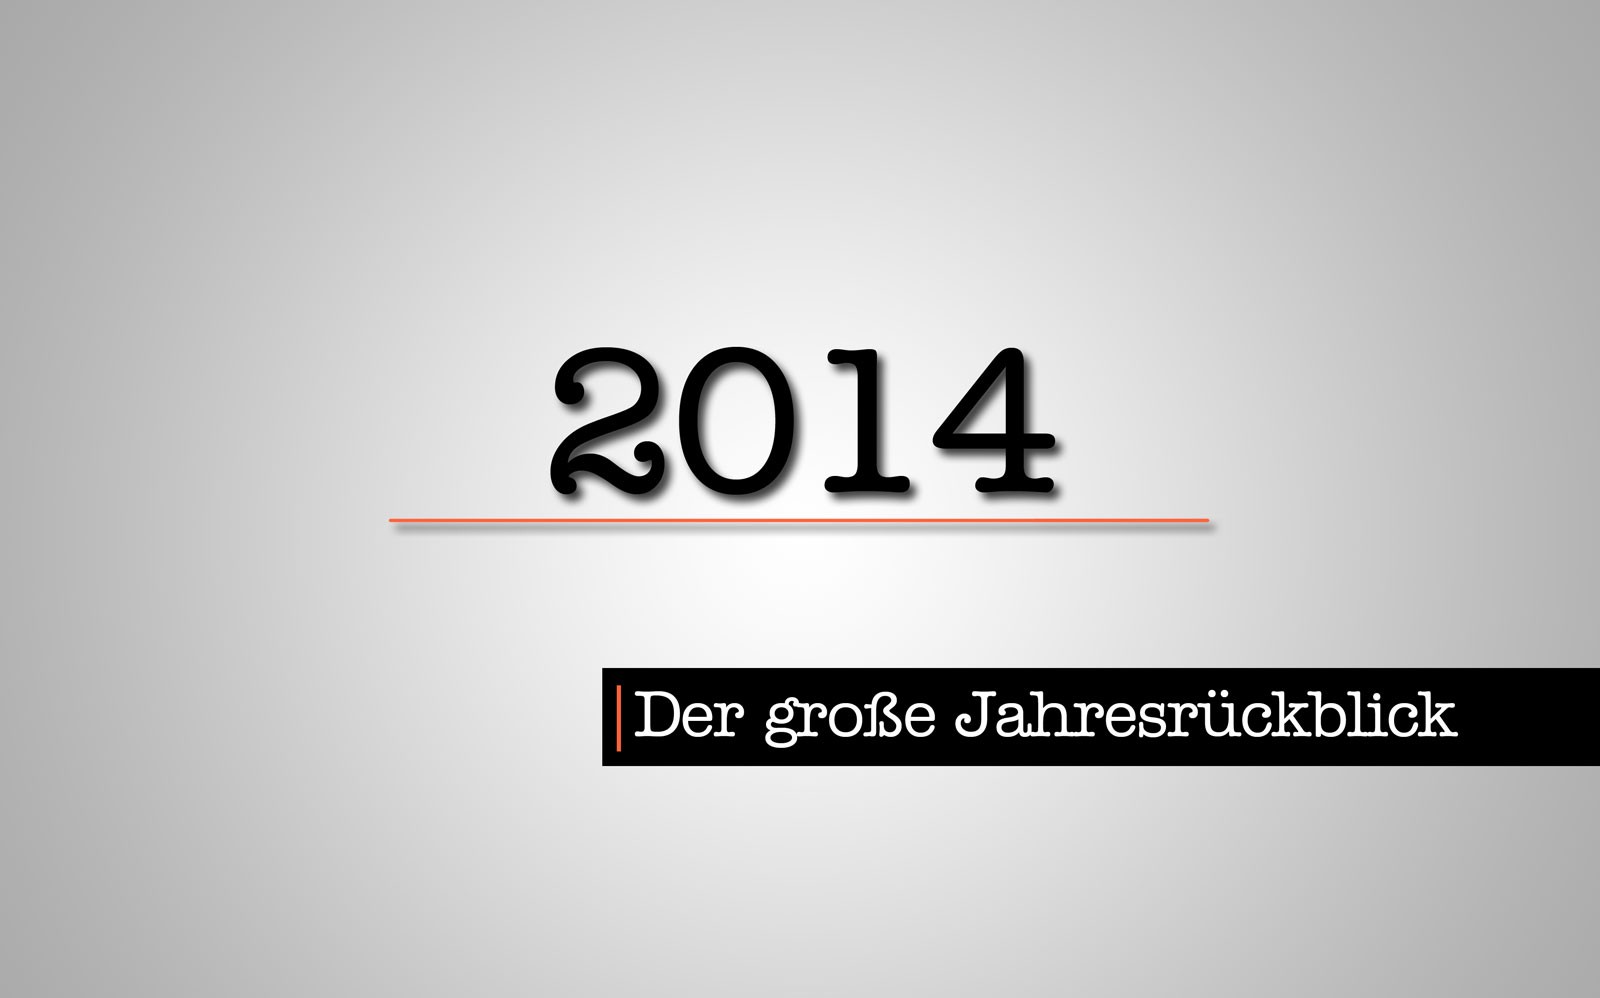 Der große Jahresrückblick 2014